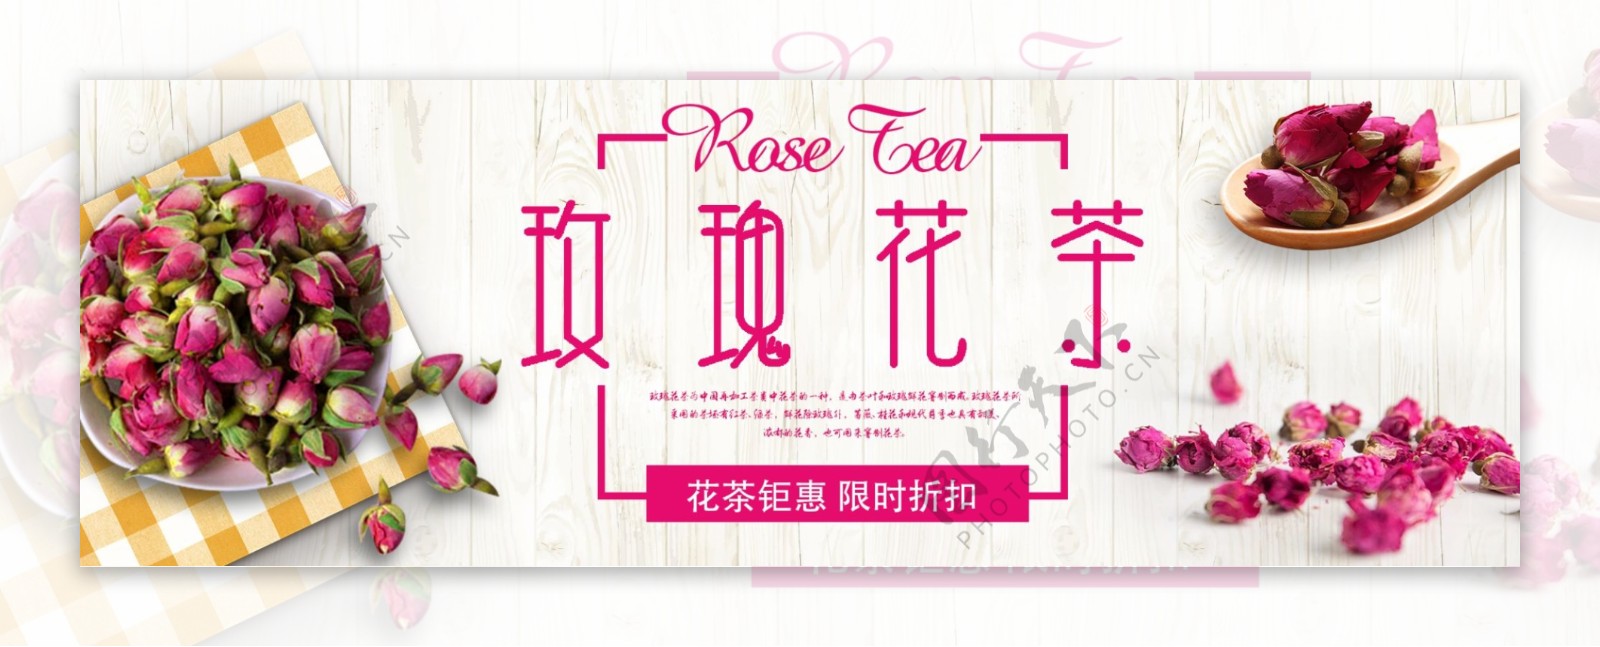 米白色时尚简约玫瑰花茶淘宝电商天猫海报